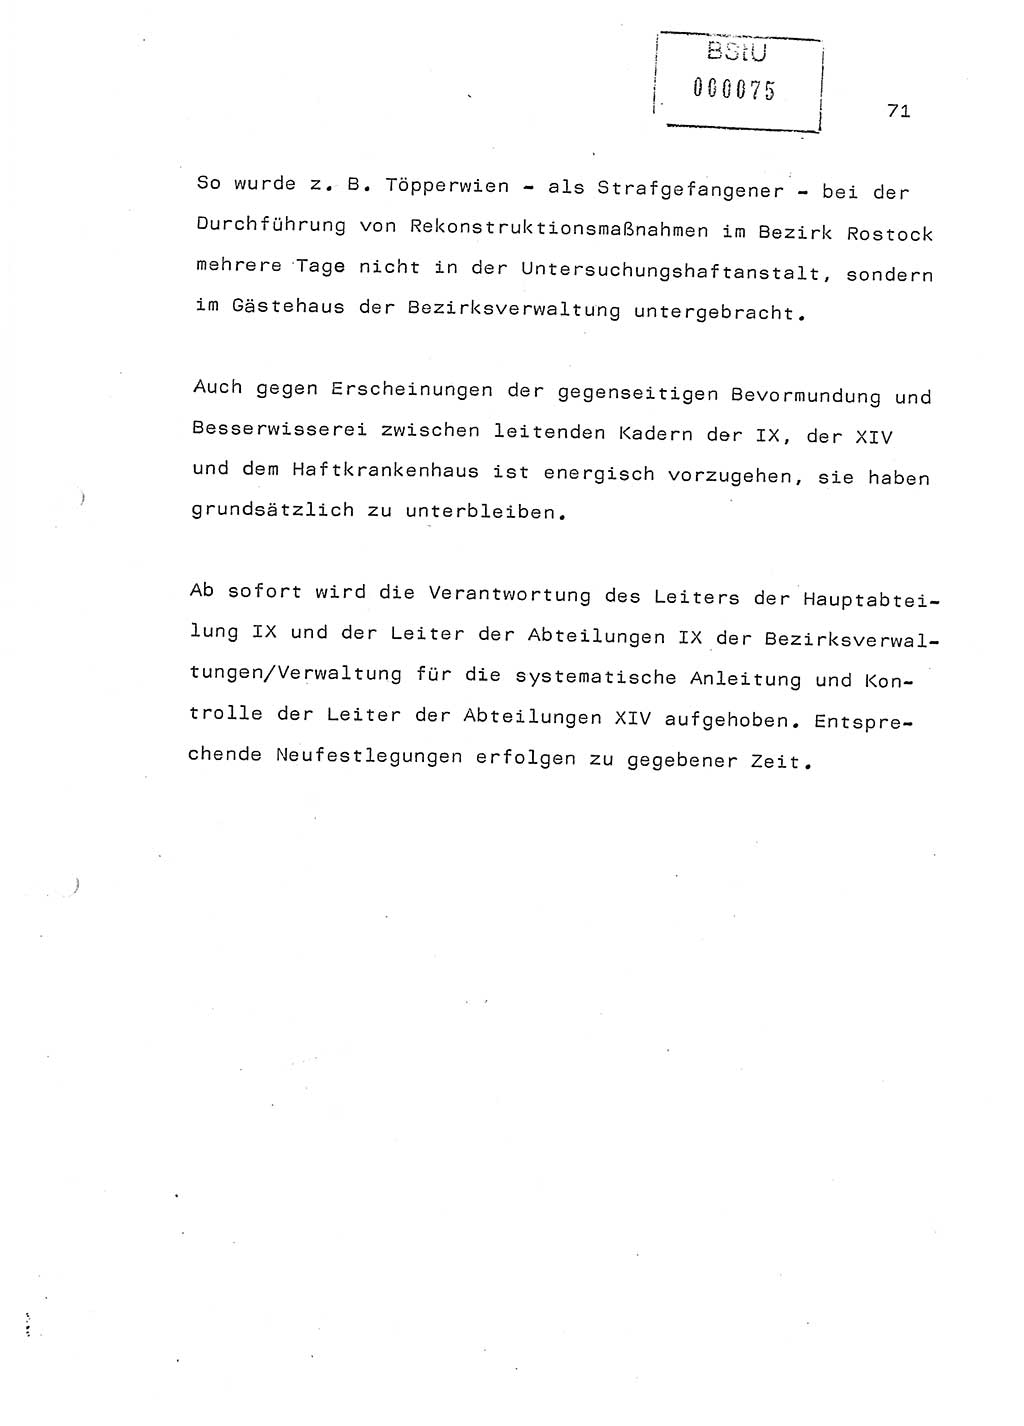 Referat (Generaloberst Erich Mielke) auf der Zentralen Dienstkonferenz am 24.5.1979 [Ministerium für Staatssicherheit (MfS), Deutsche Demokratische Republik (DDR), Der Minister], Berlin 1979, Seite 71 (Ref. DK DDR MfS Min. /79 1979, S. 71)